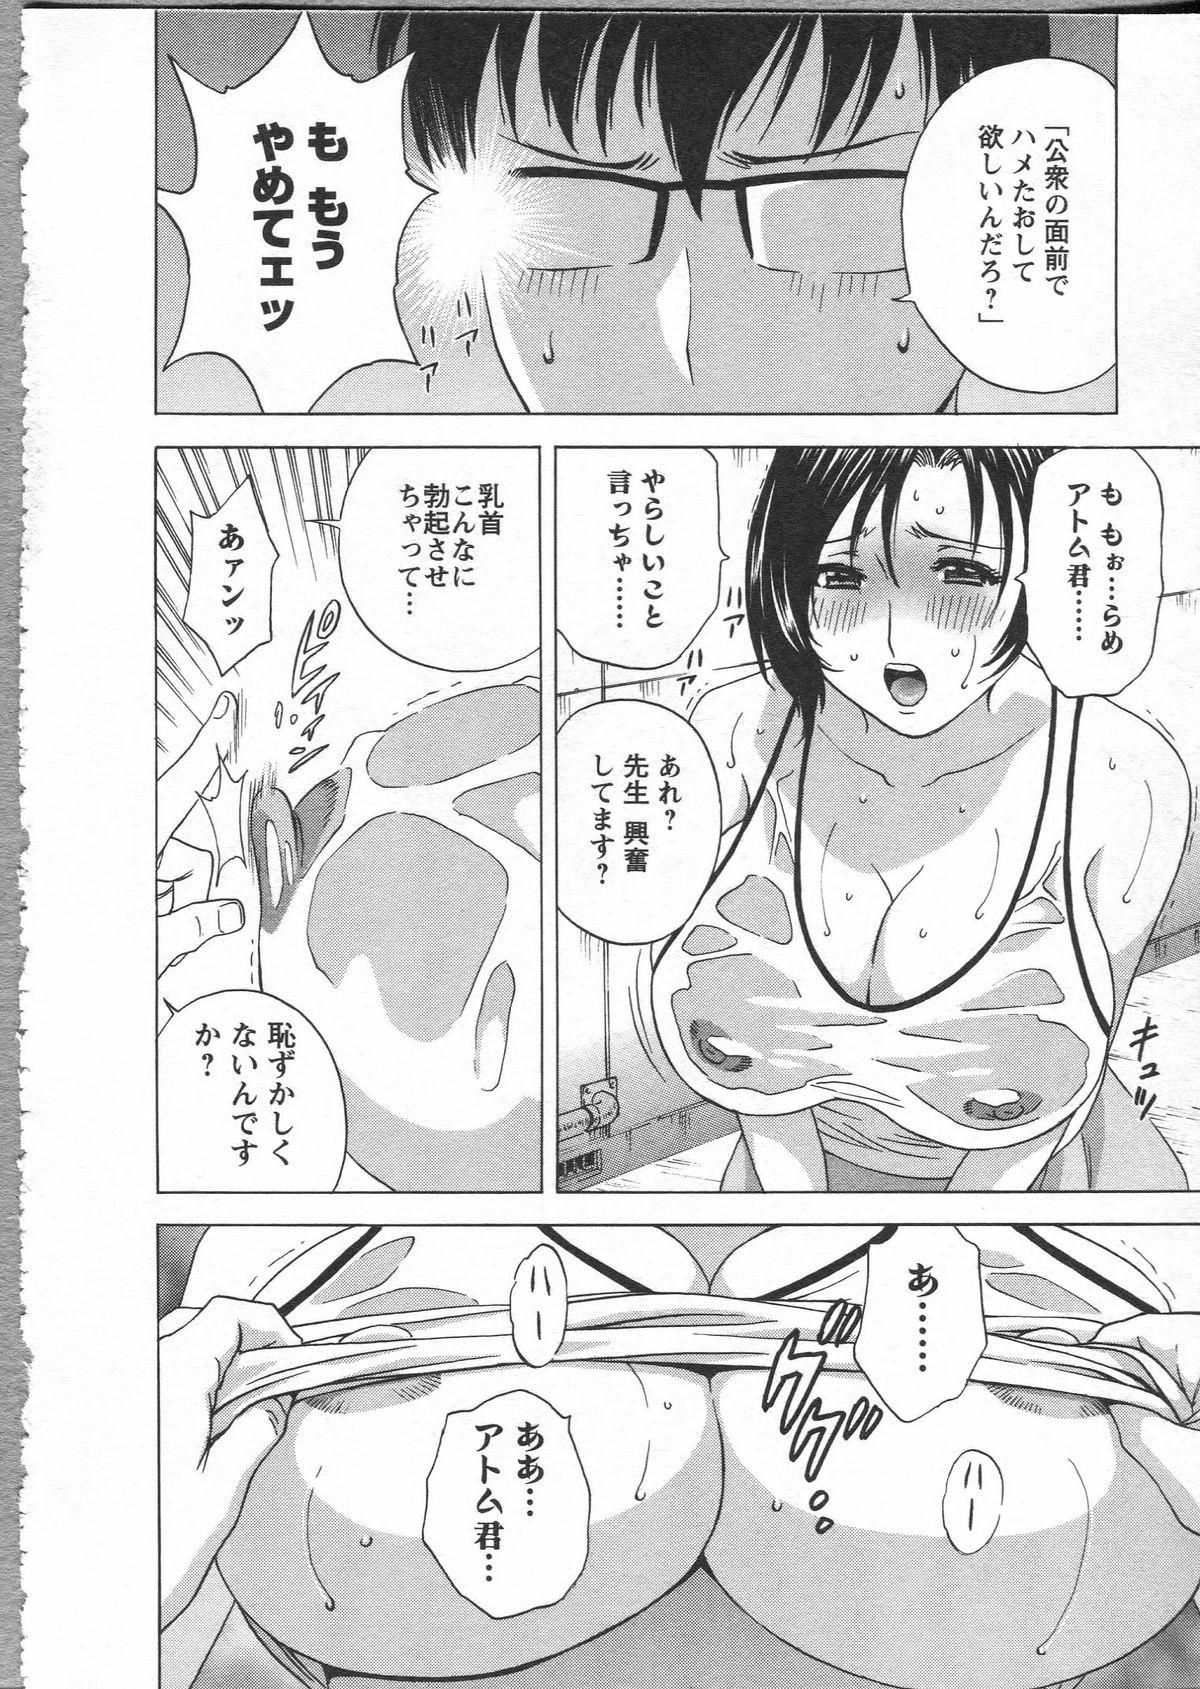 Manga no youna Hitozuma to no Hibi - Days with Married Women such as Comics. 145